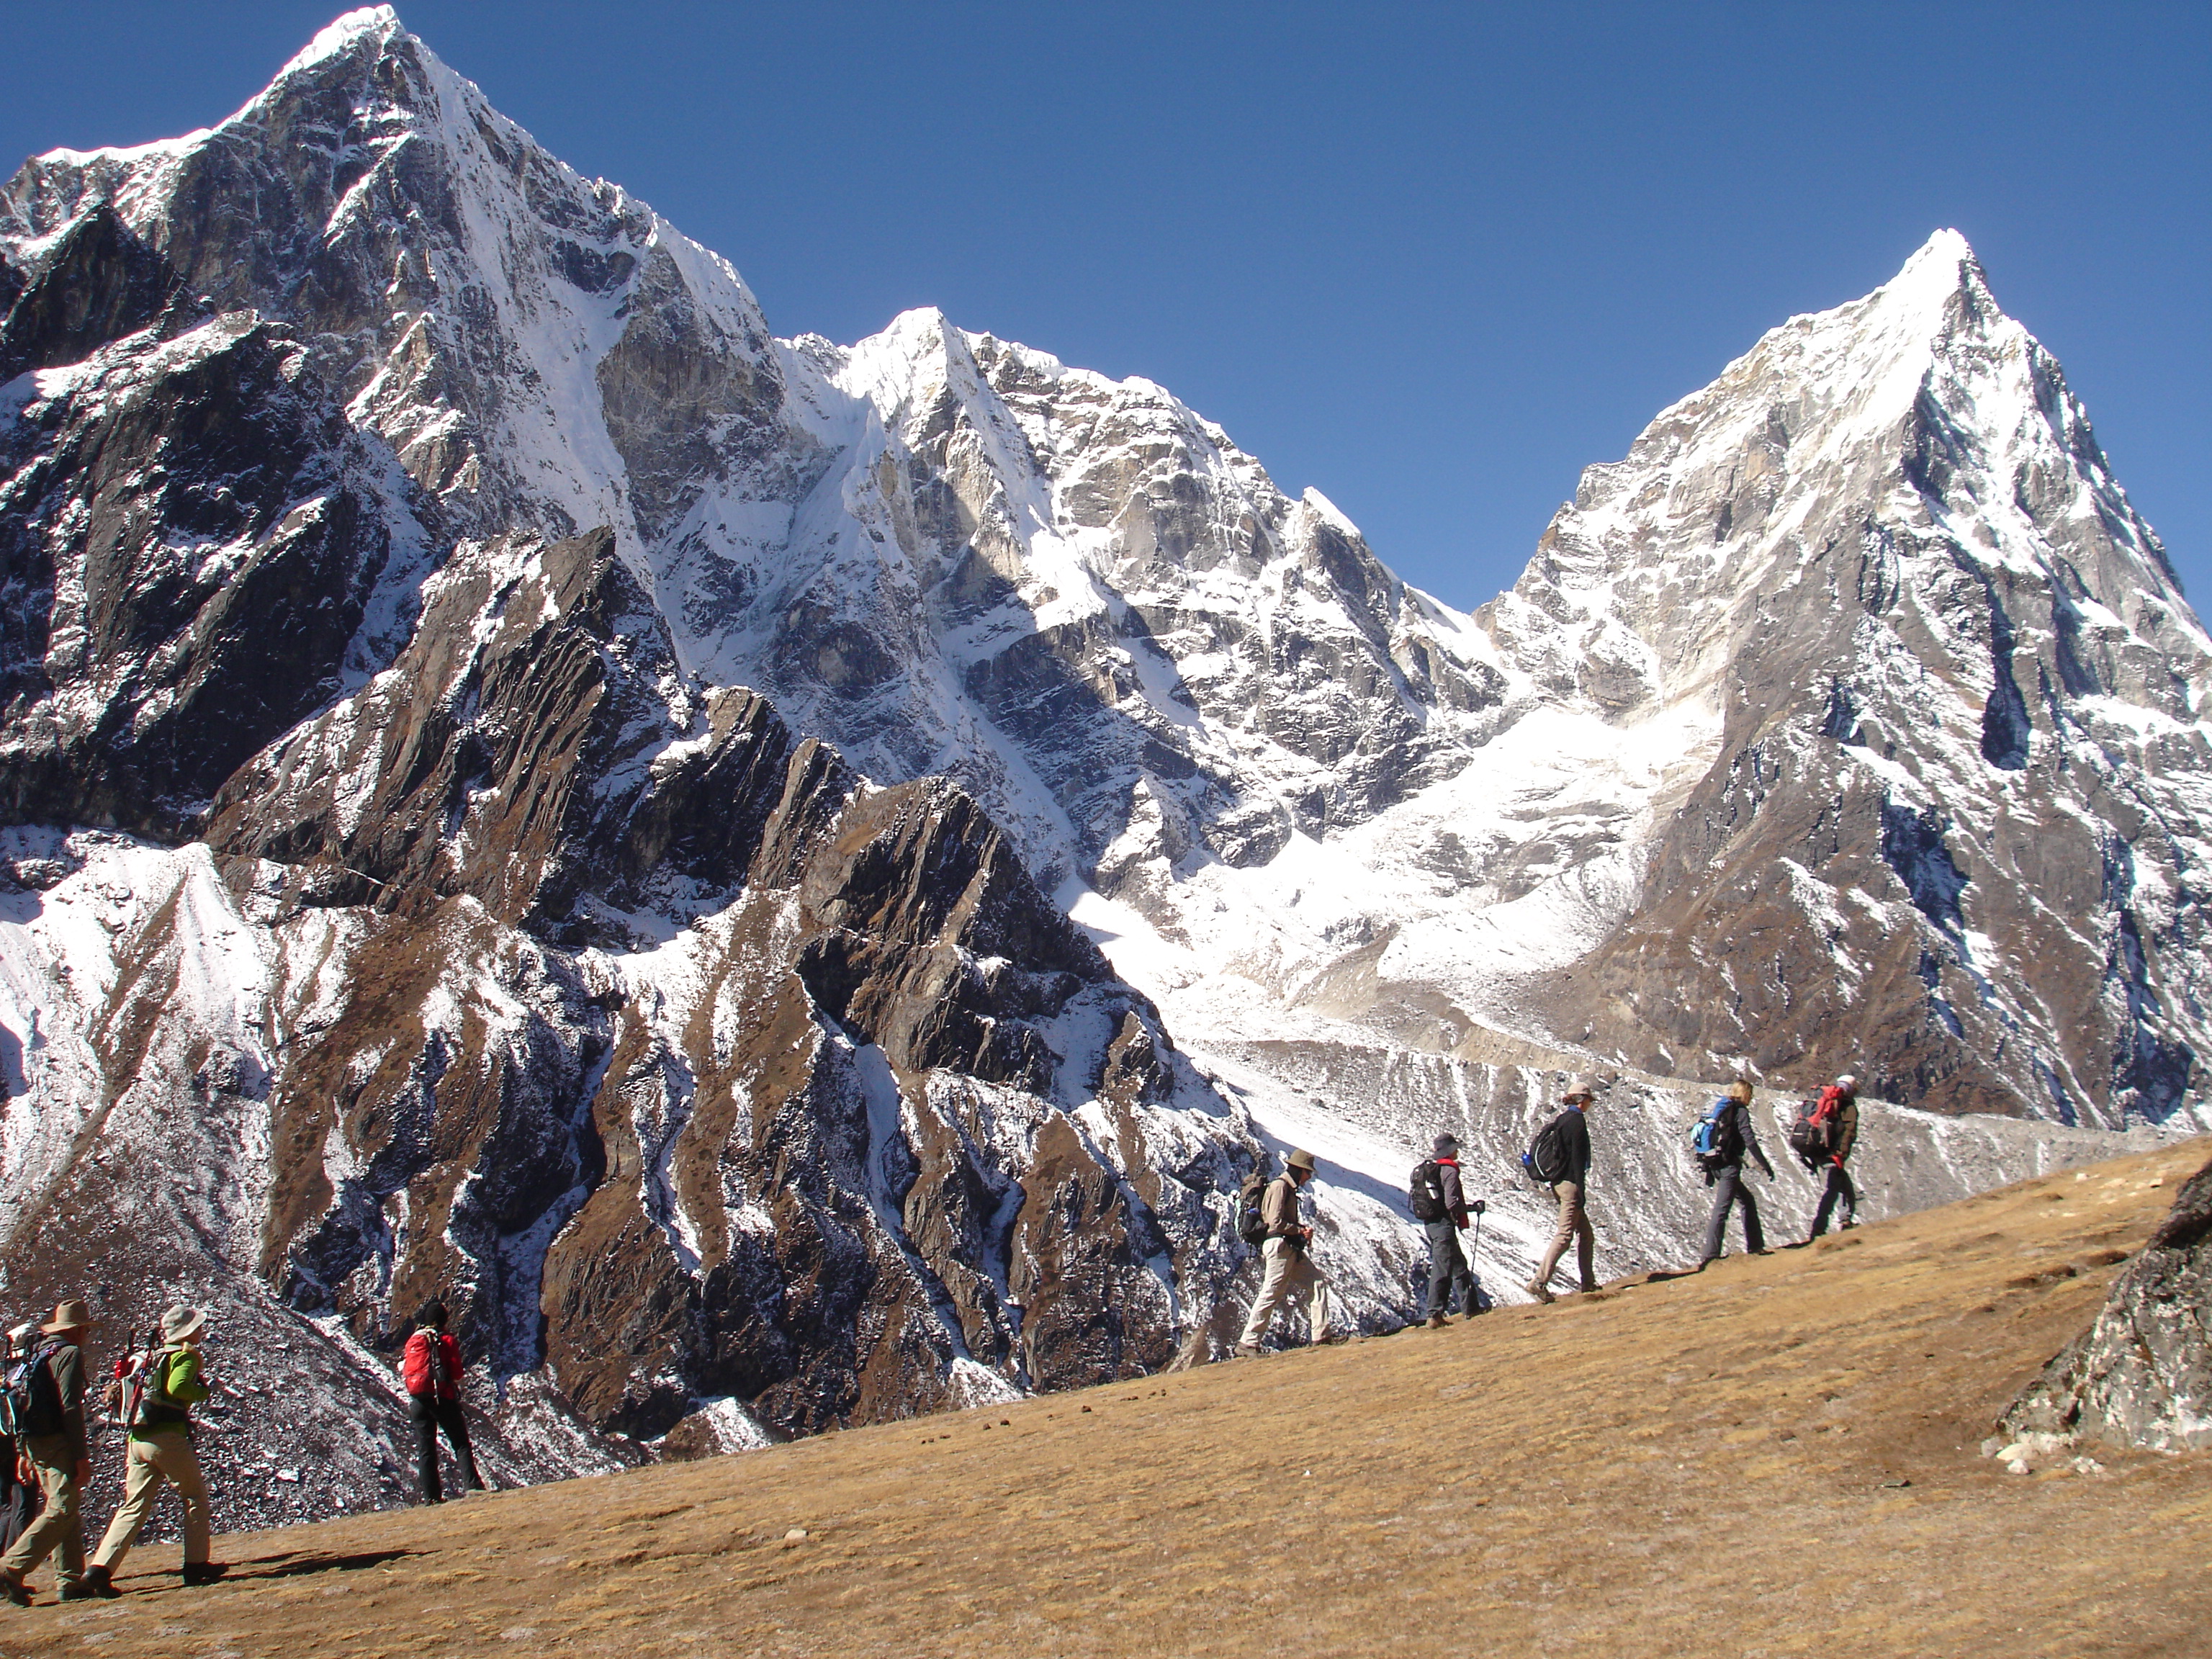 everest base camp , everest base camp Trekking, Trekking in nepal, Everest Budget Trekking, Everest trip Highlights